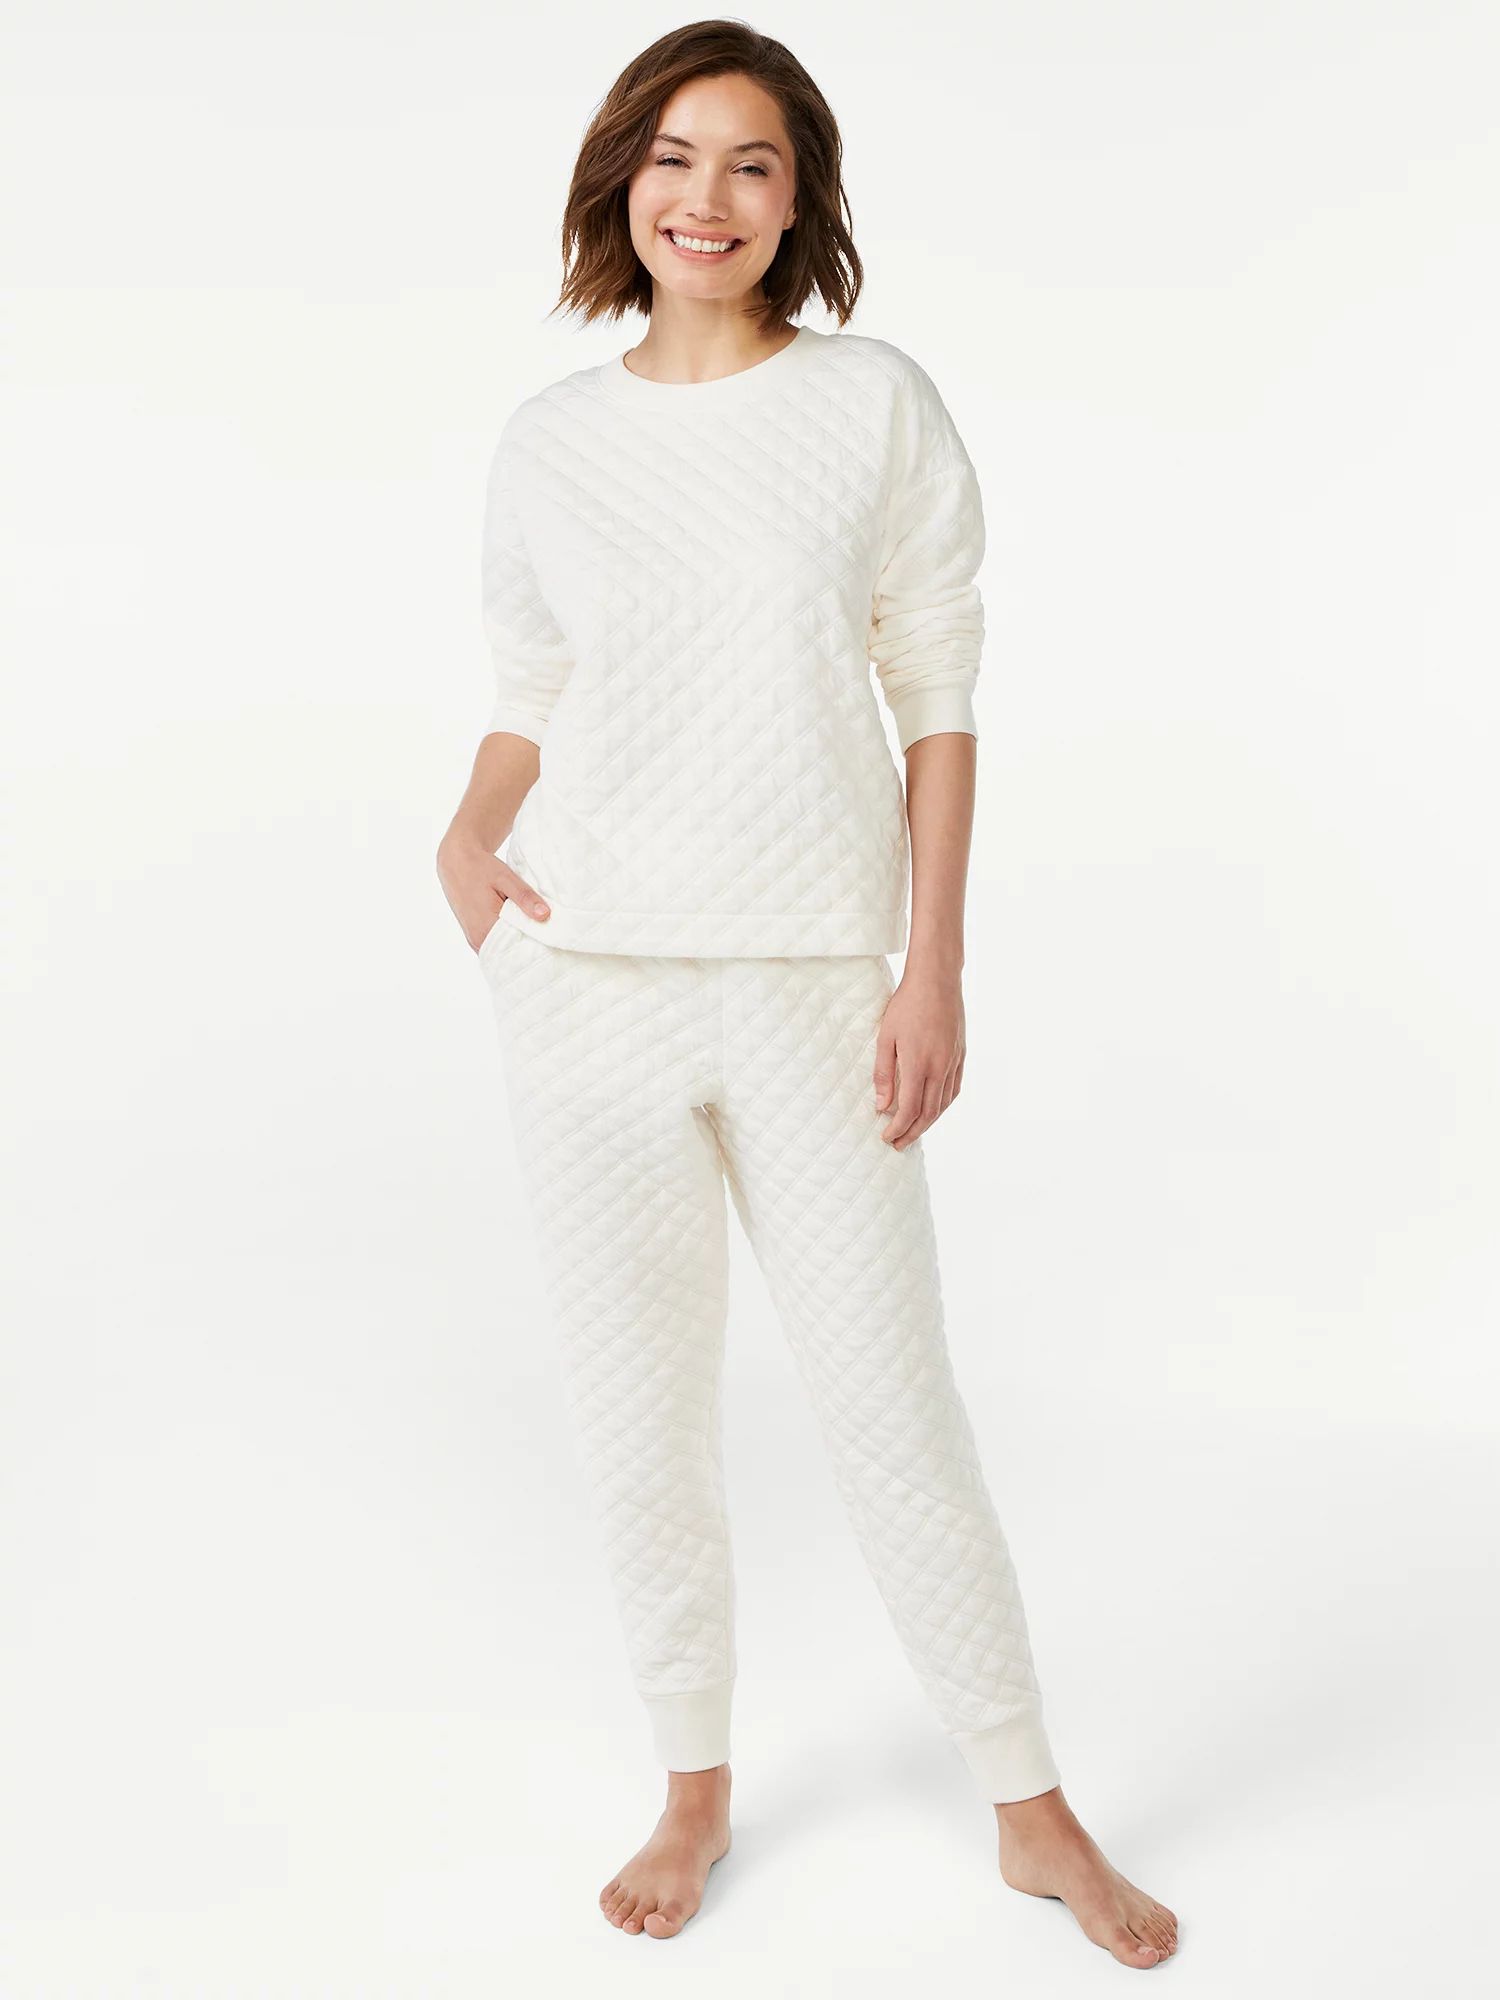 Joyspun Women's Quilted Long Sleeve Sleep Top and Jogger PJ Set, 2-Piece, Sizes up to 3X | Walmart (US)